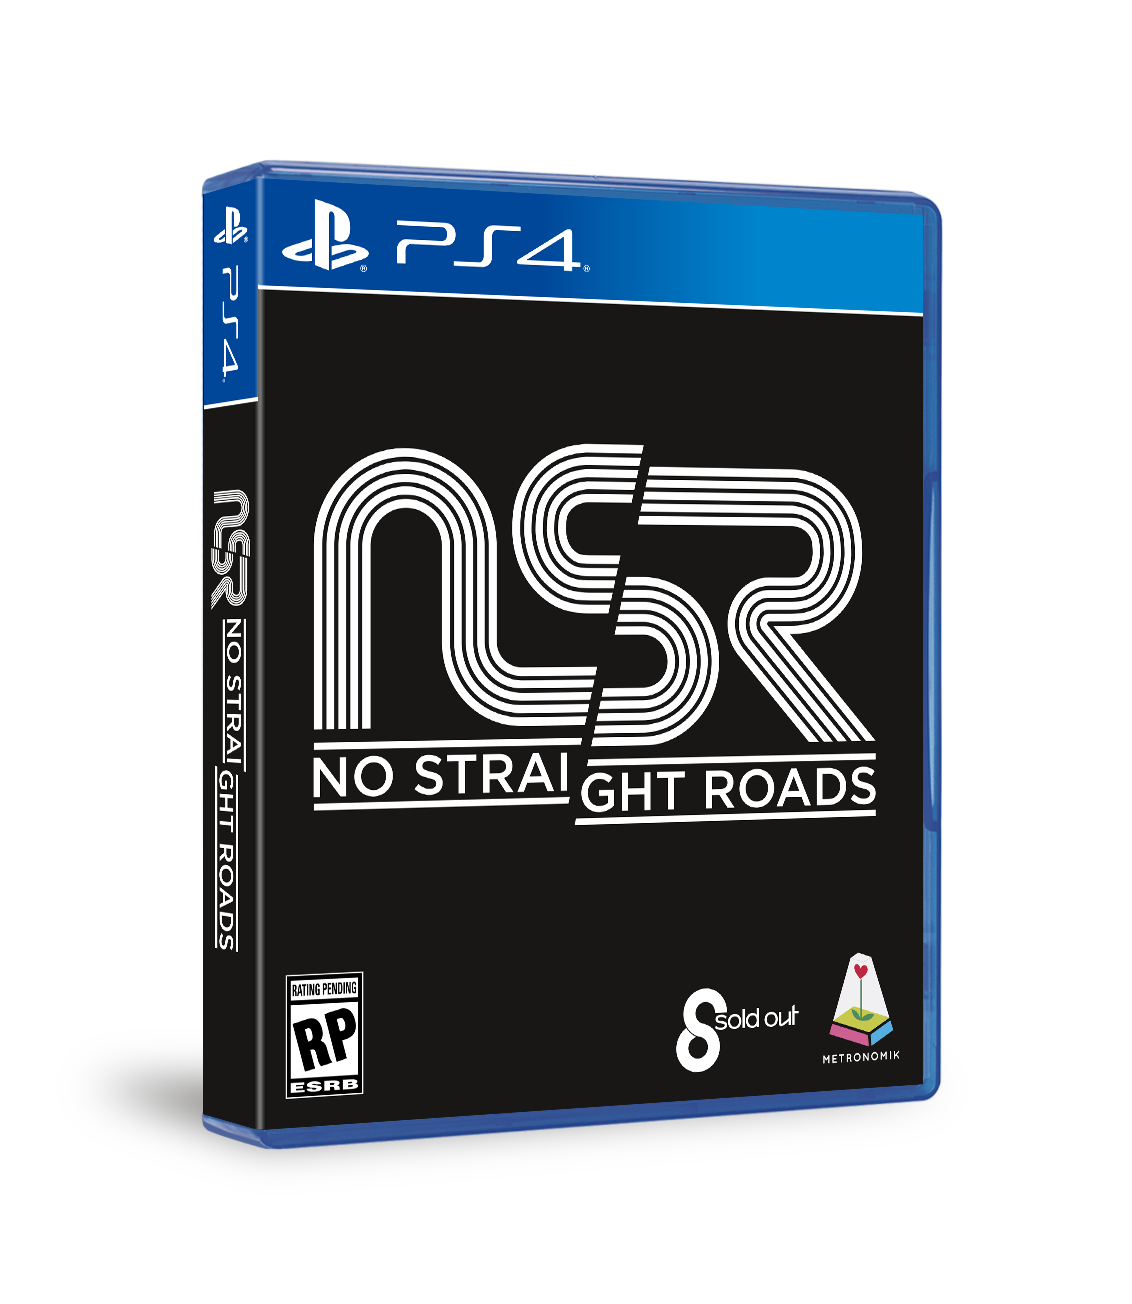 NSR - PS4 3D Packshot, ESRB